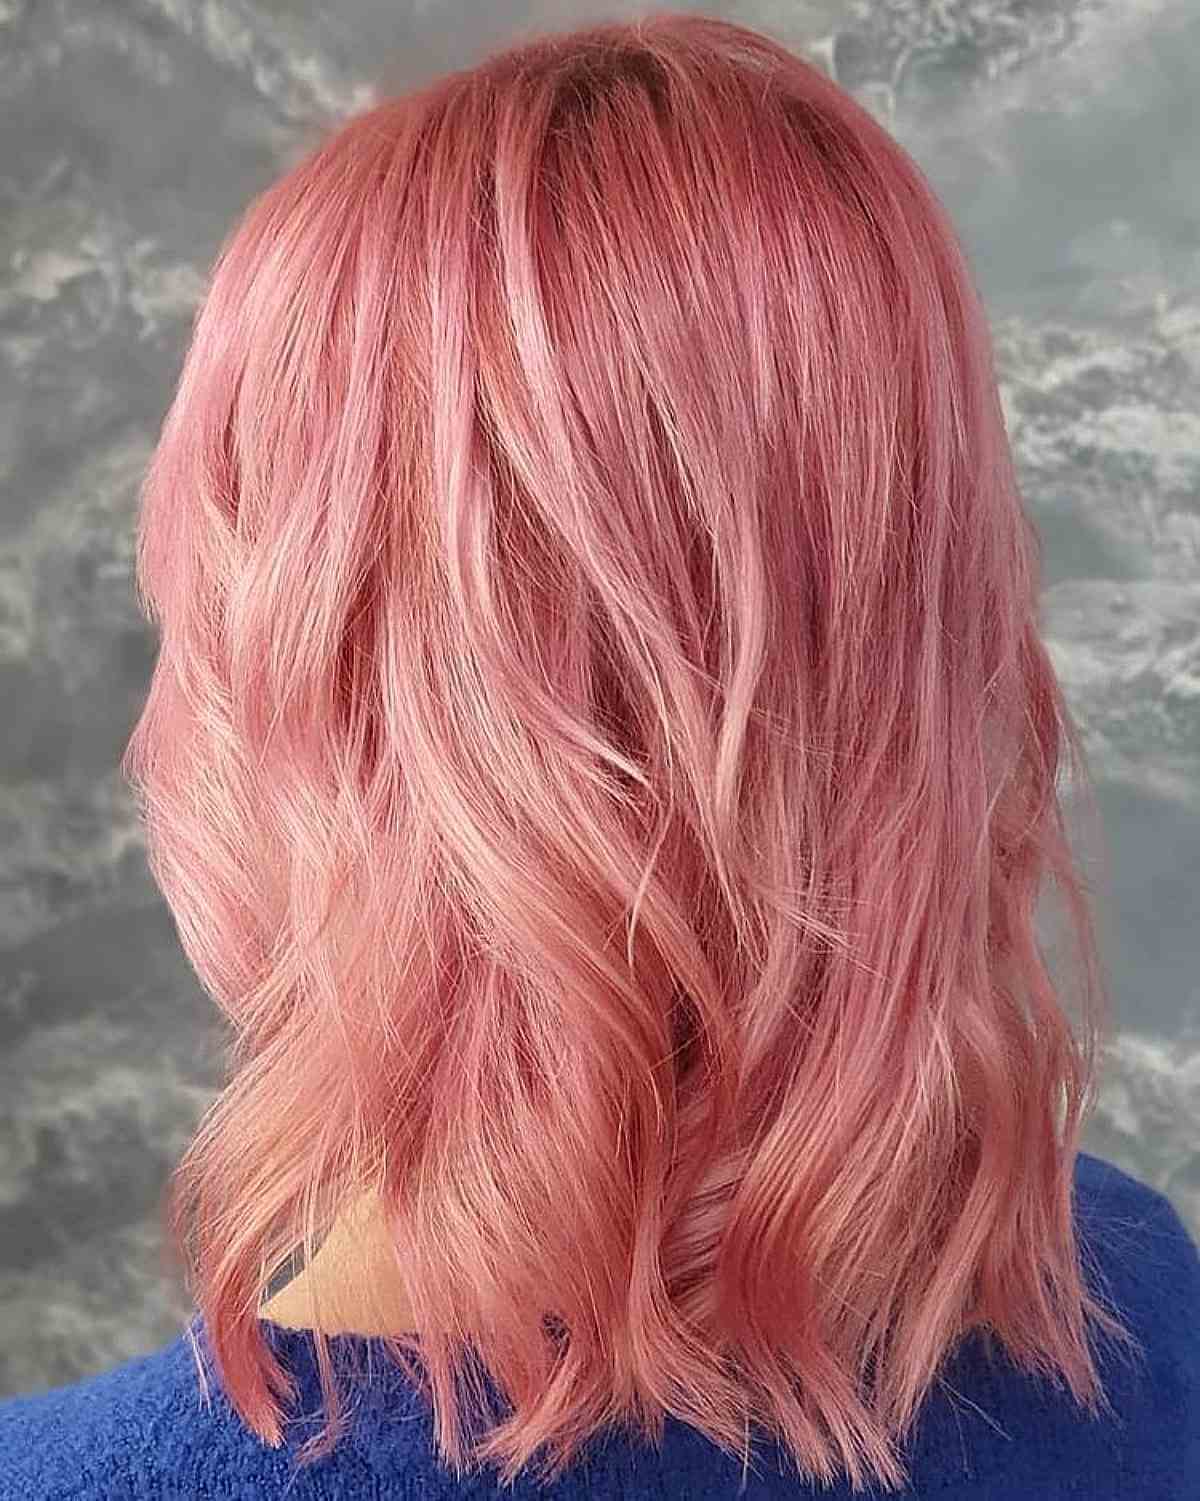 Tousled Shoulder-Length Lighter Pink Hair